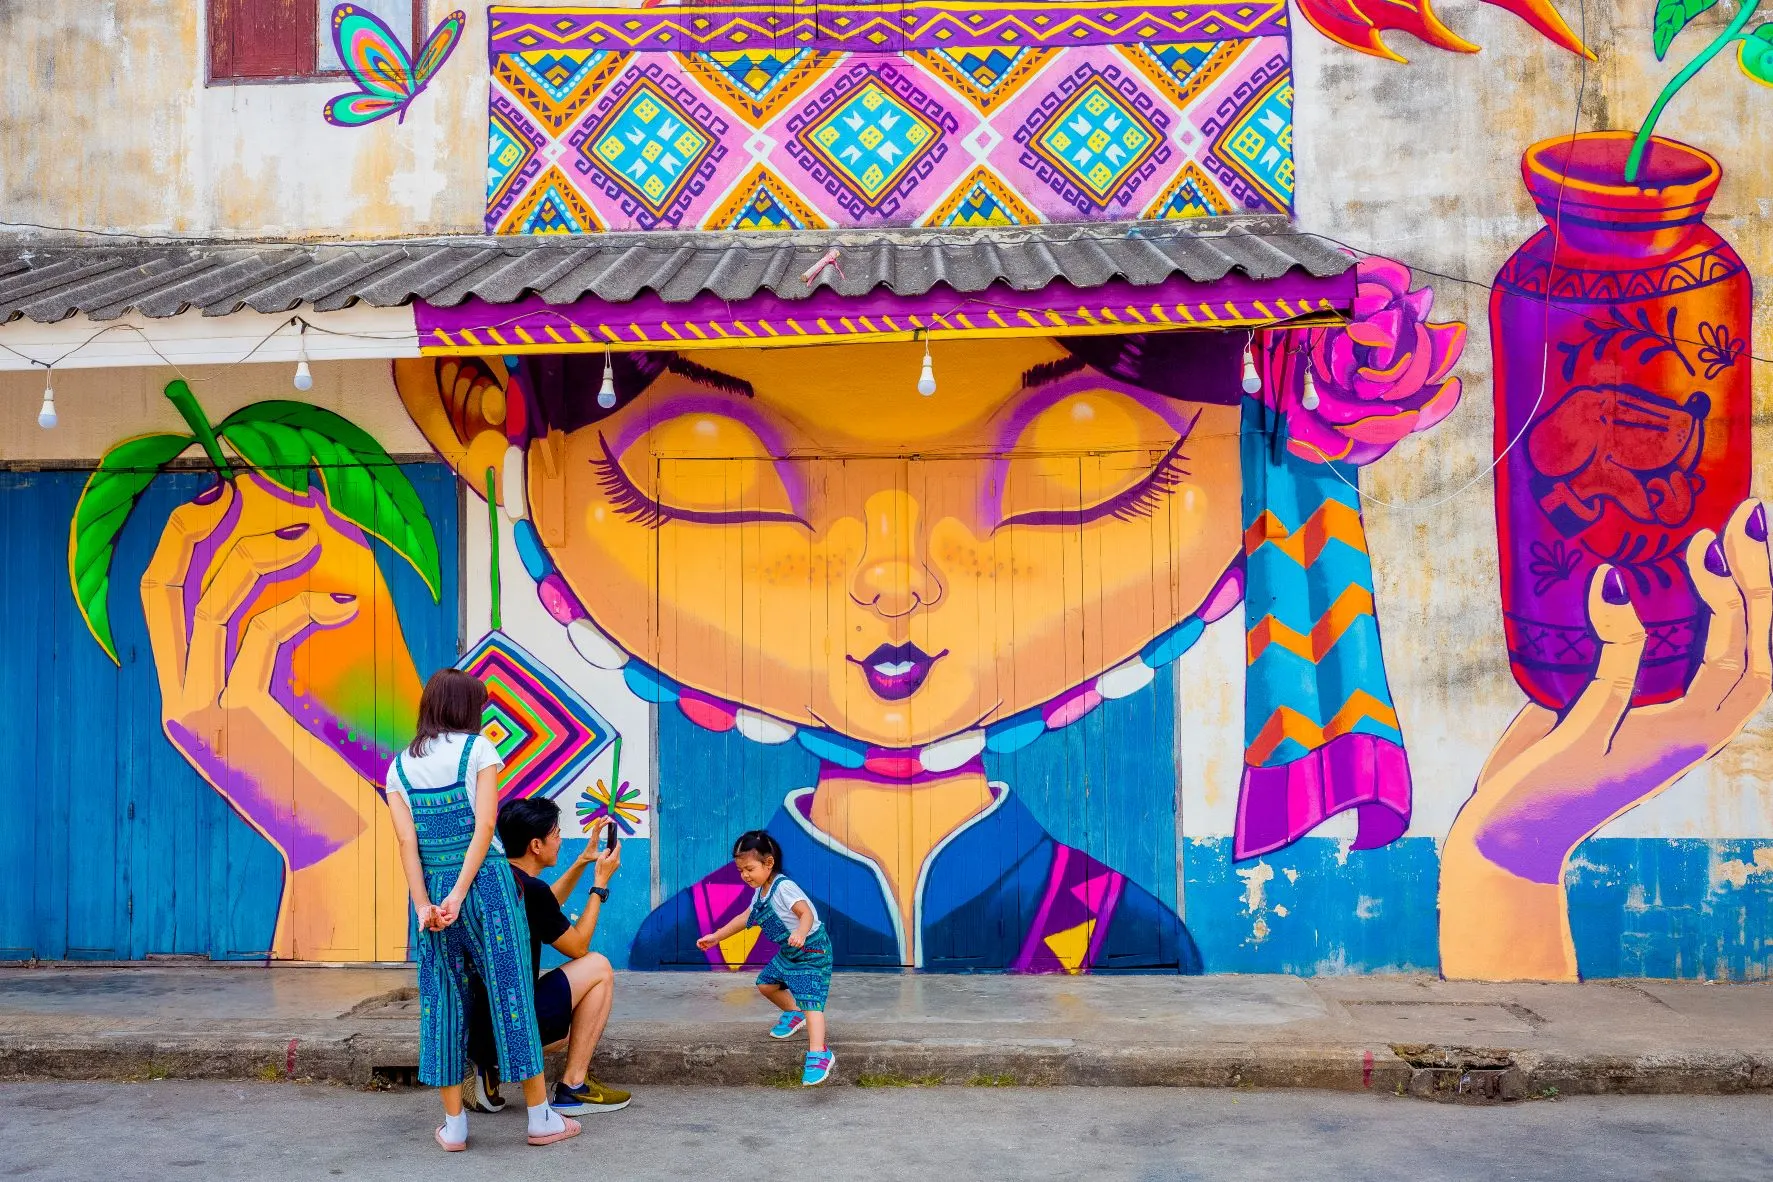 สุโขทัย-Street Art สวรรคโลก (Source: การท่องเที่ยวแห่งประเทศไทย)